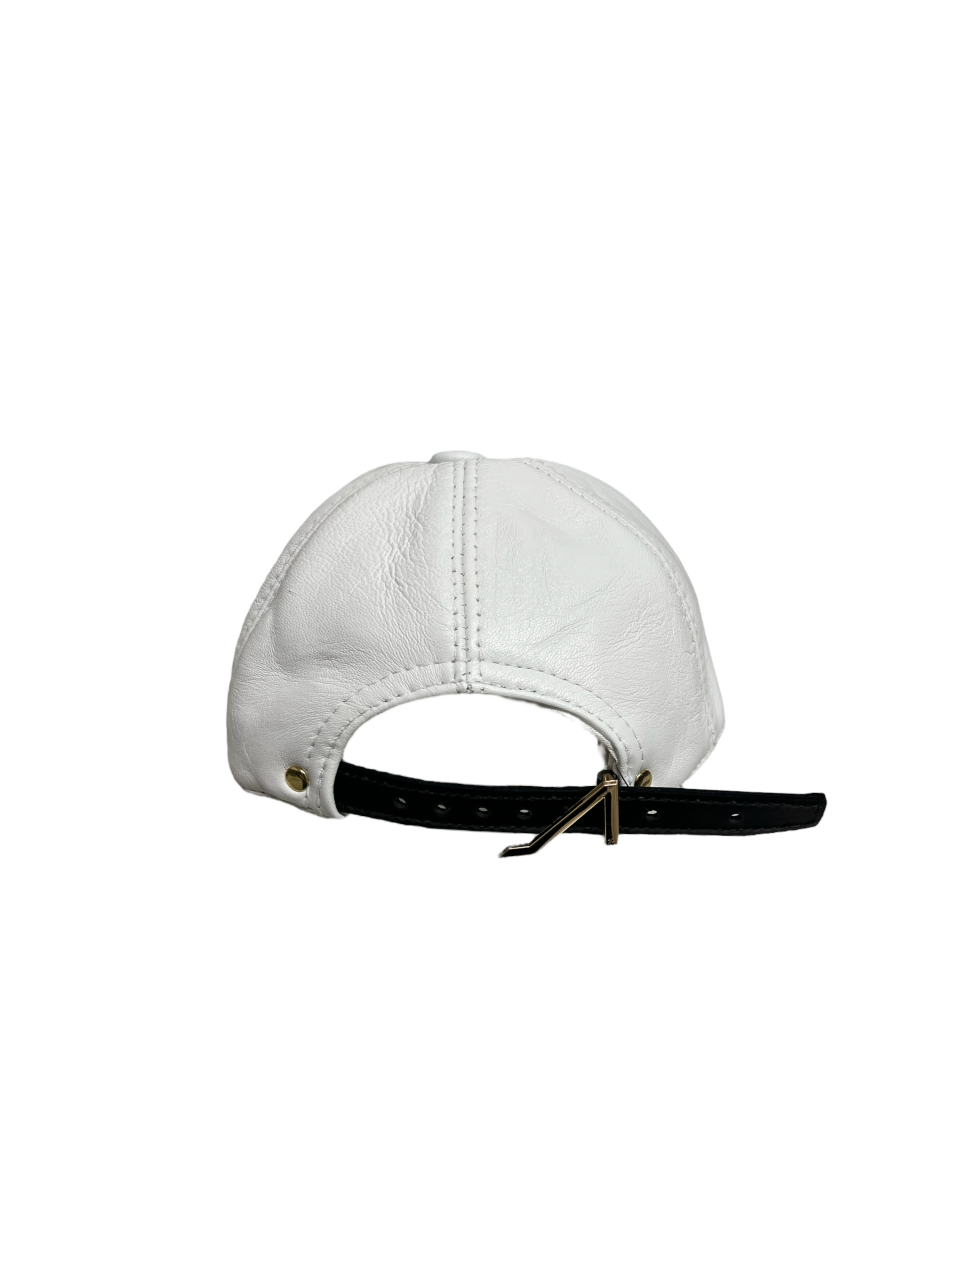 Apoli White hat black logo